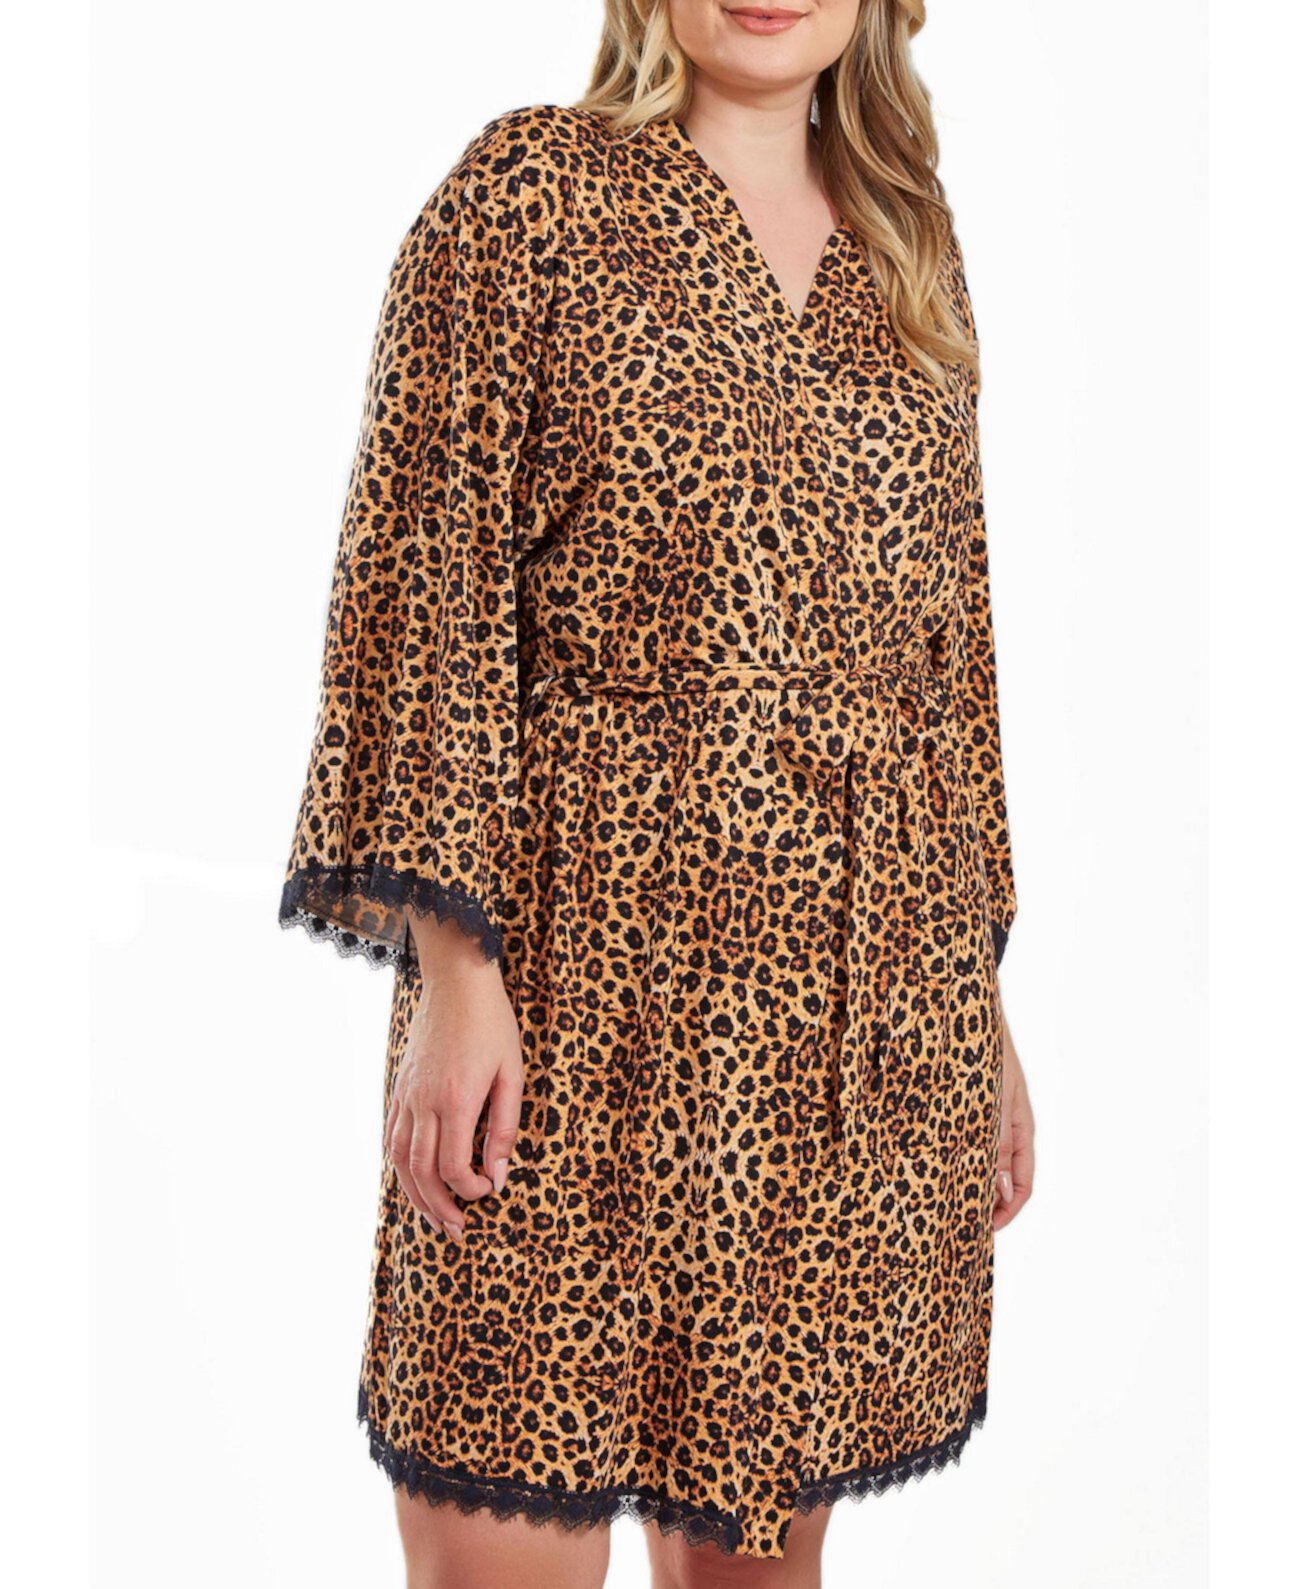 Chiya Большой размер Леопардовый халат с поясом на завязках и кружевной отделкой по подолу ICollection